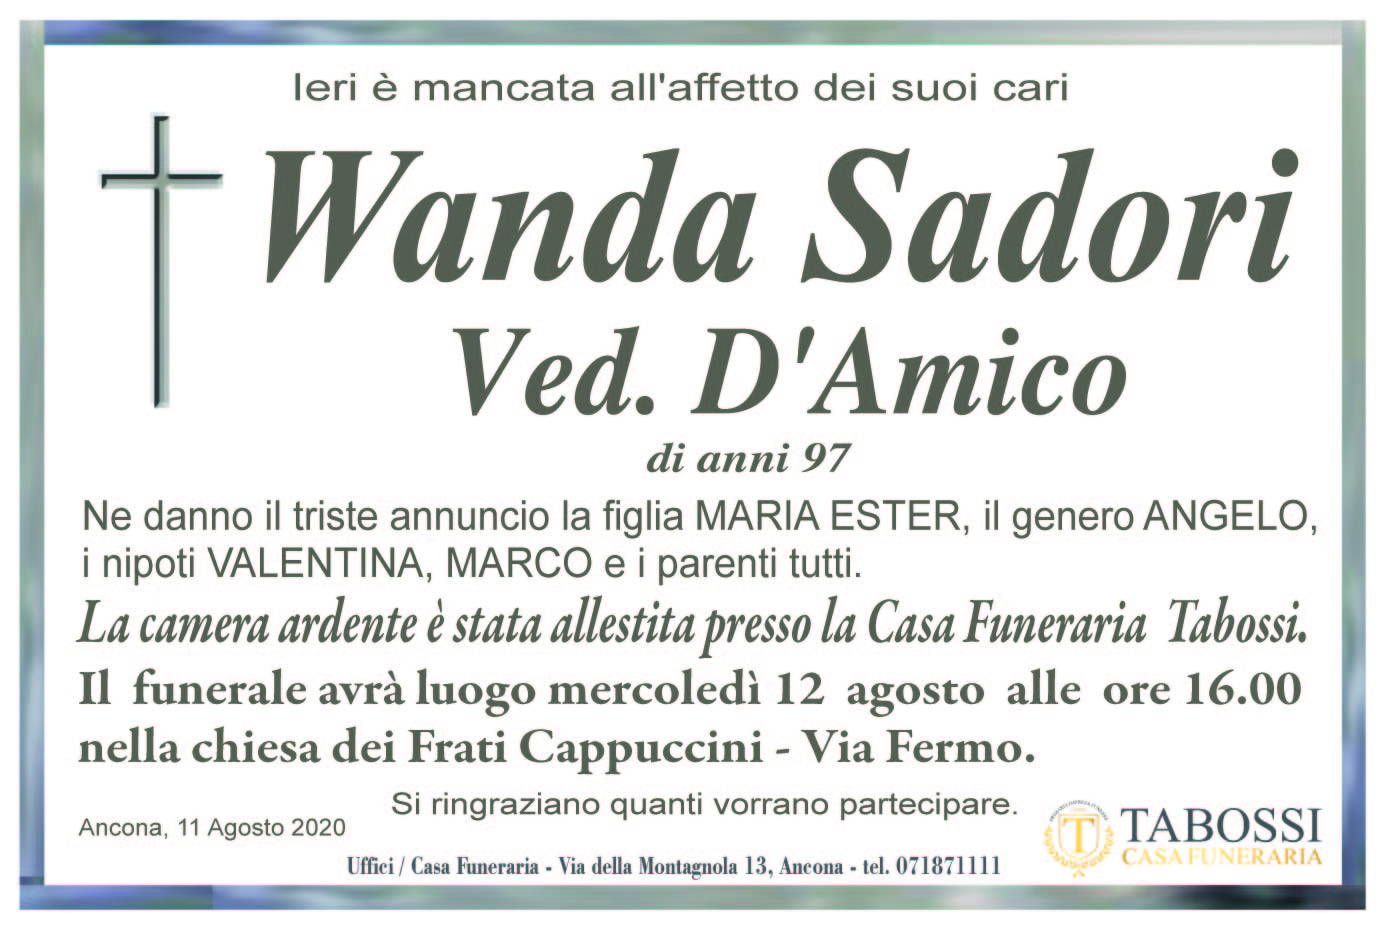 Wanda Sadori